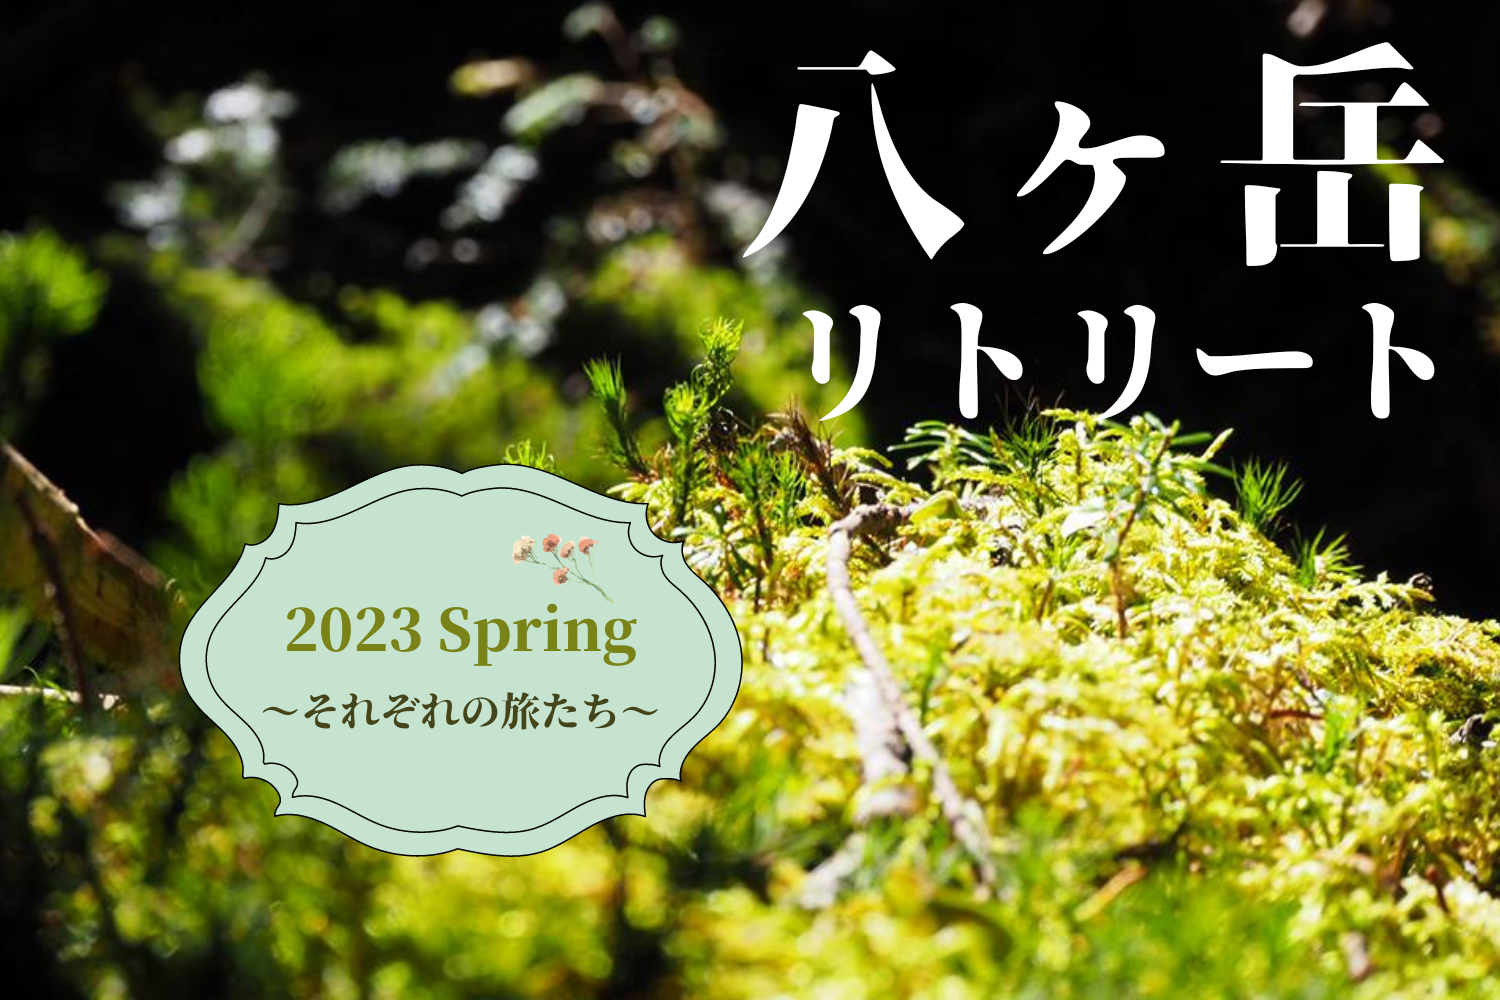 八ヶ岳2023 Spring